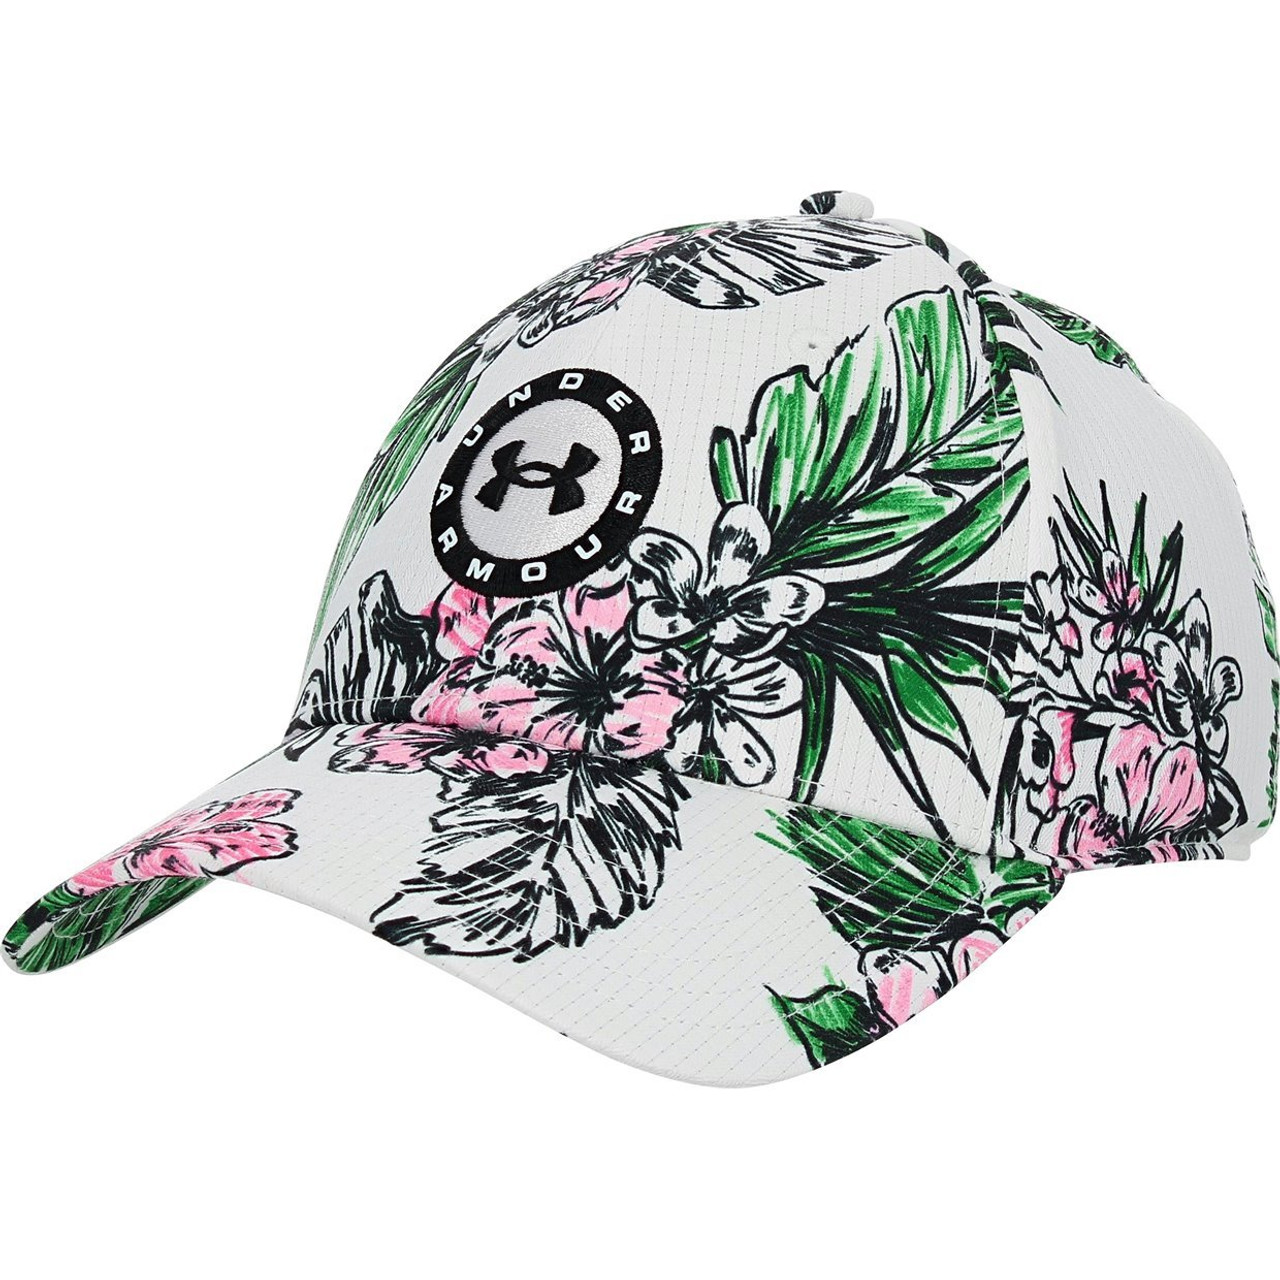 Under Armour Golf UA Spieth Floral Tour Hat